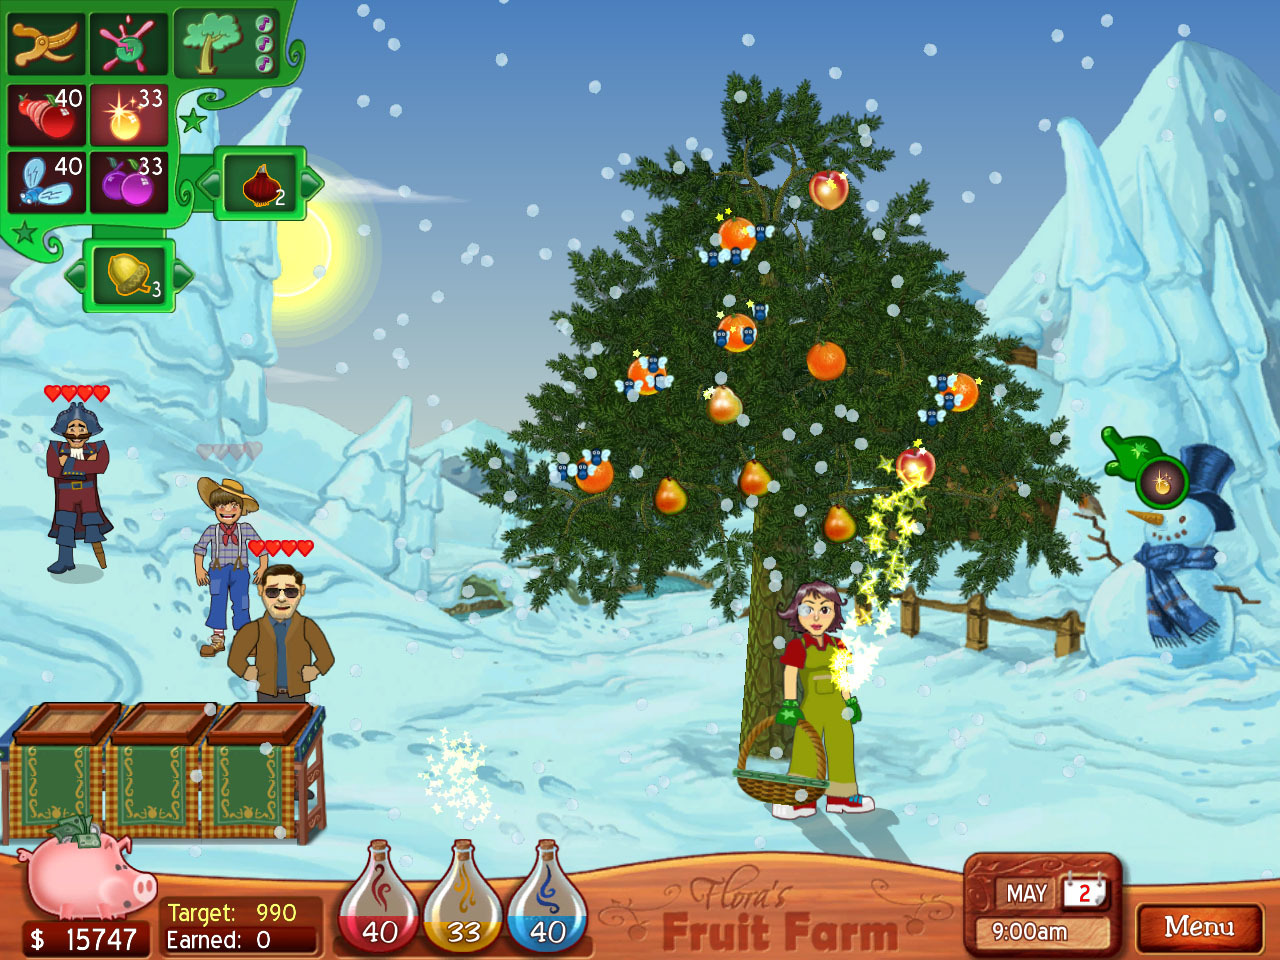 Flora's Fruit Farm Featured Screenshot #1